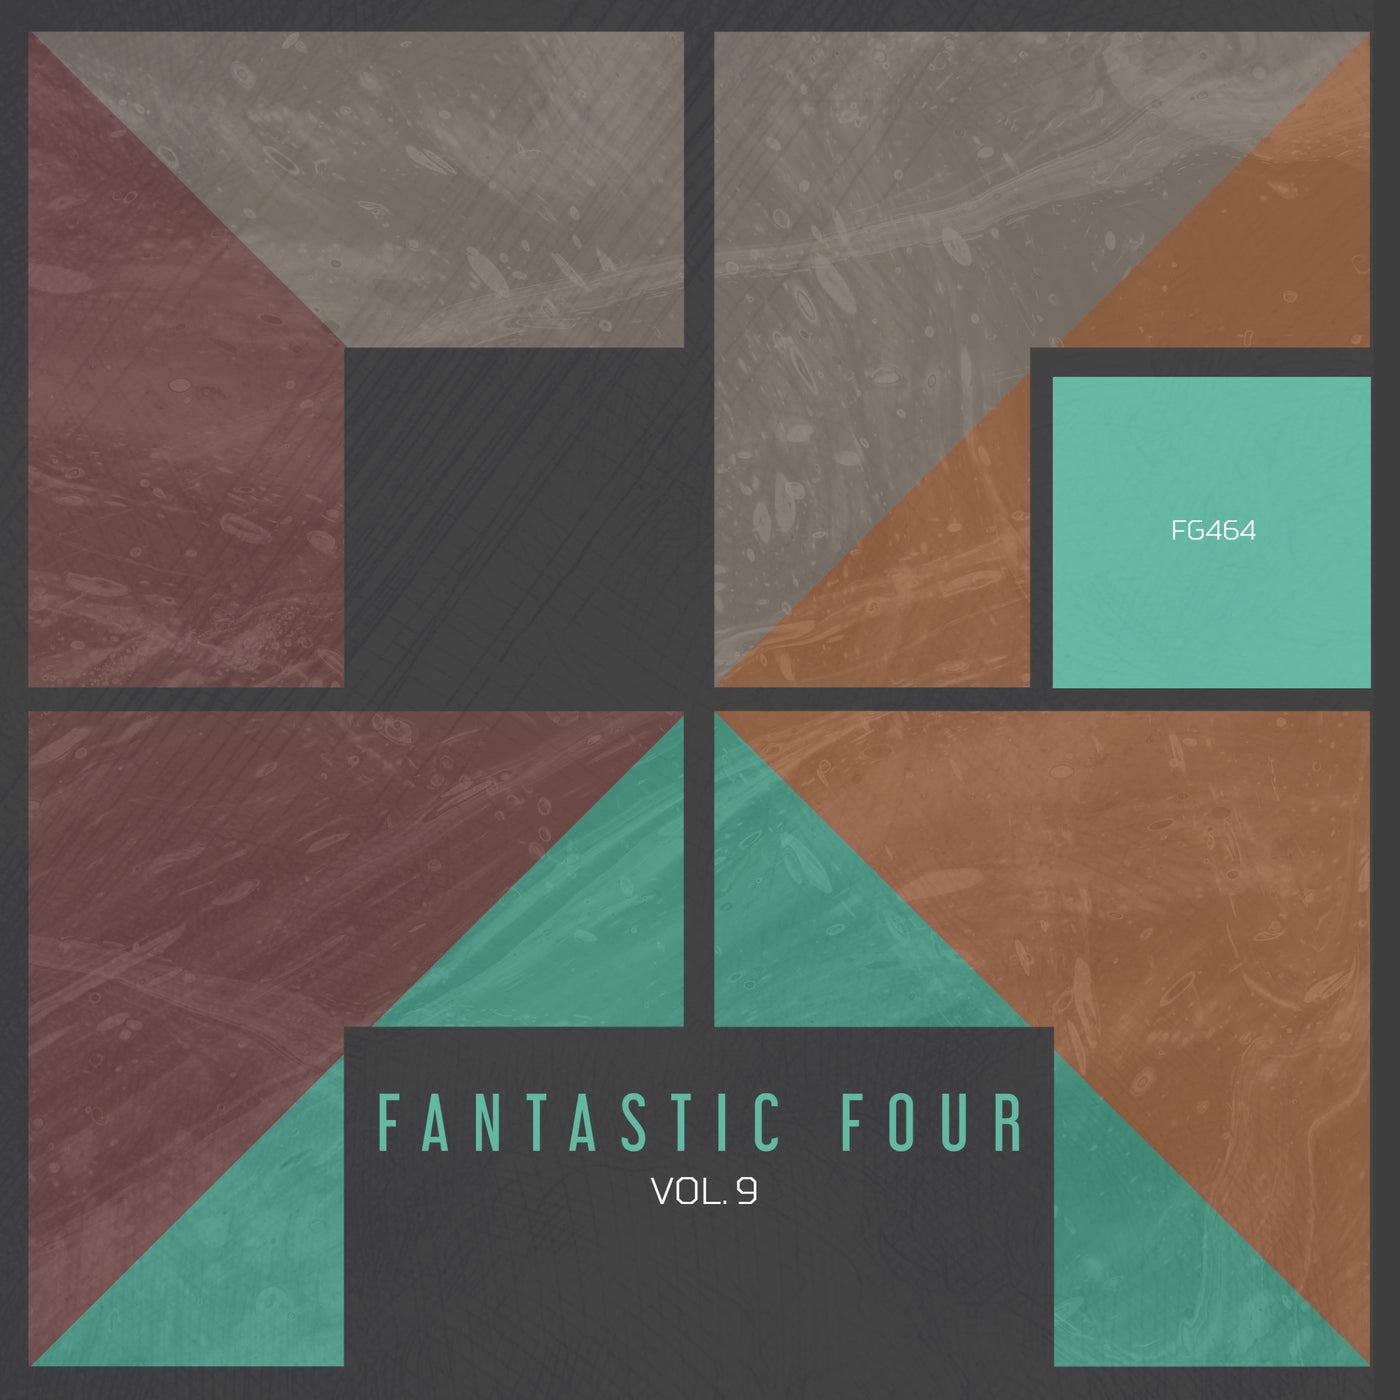 VA – Fantastic Four vol.9 [FG464]